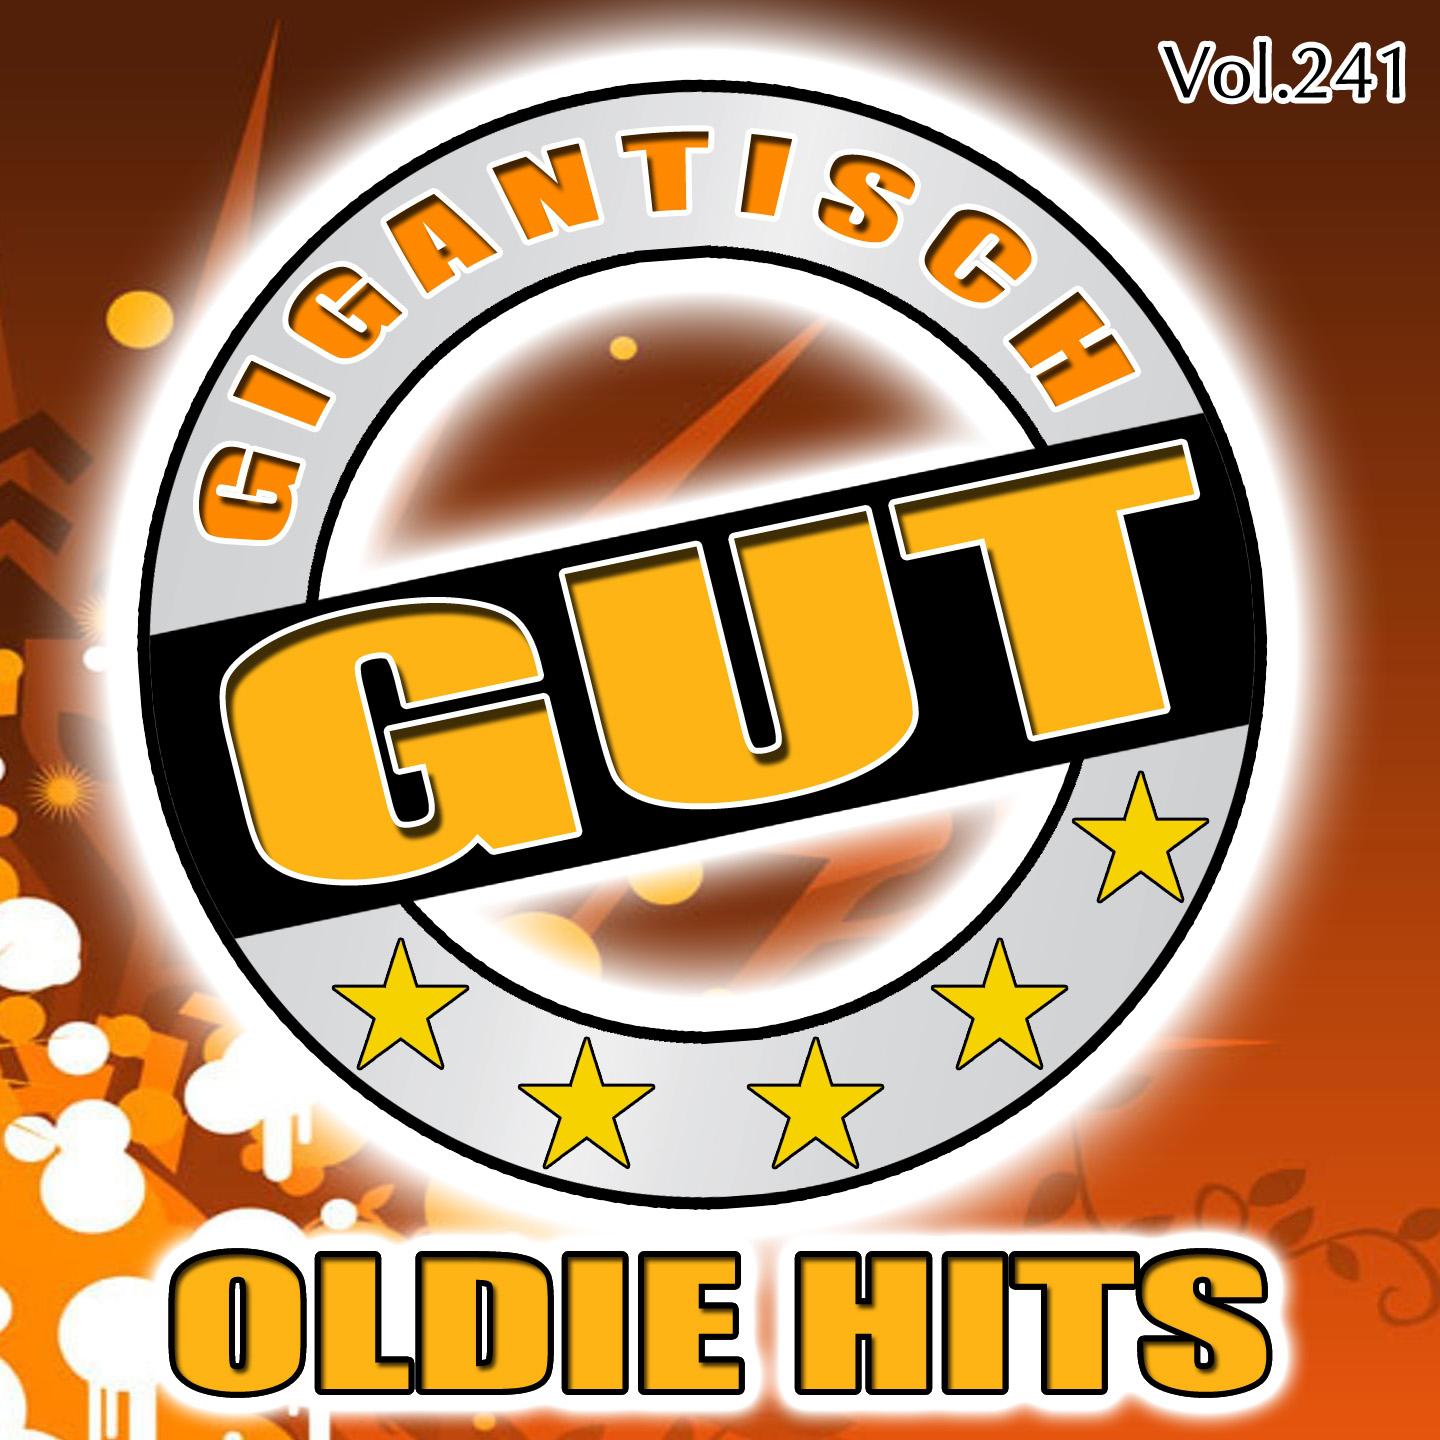 Gigantisch Gut: Oldie Hits, Vol. 241